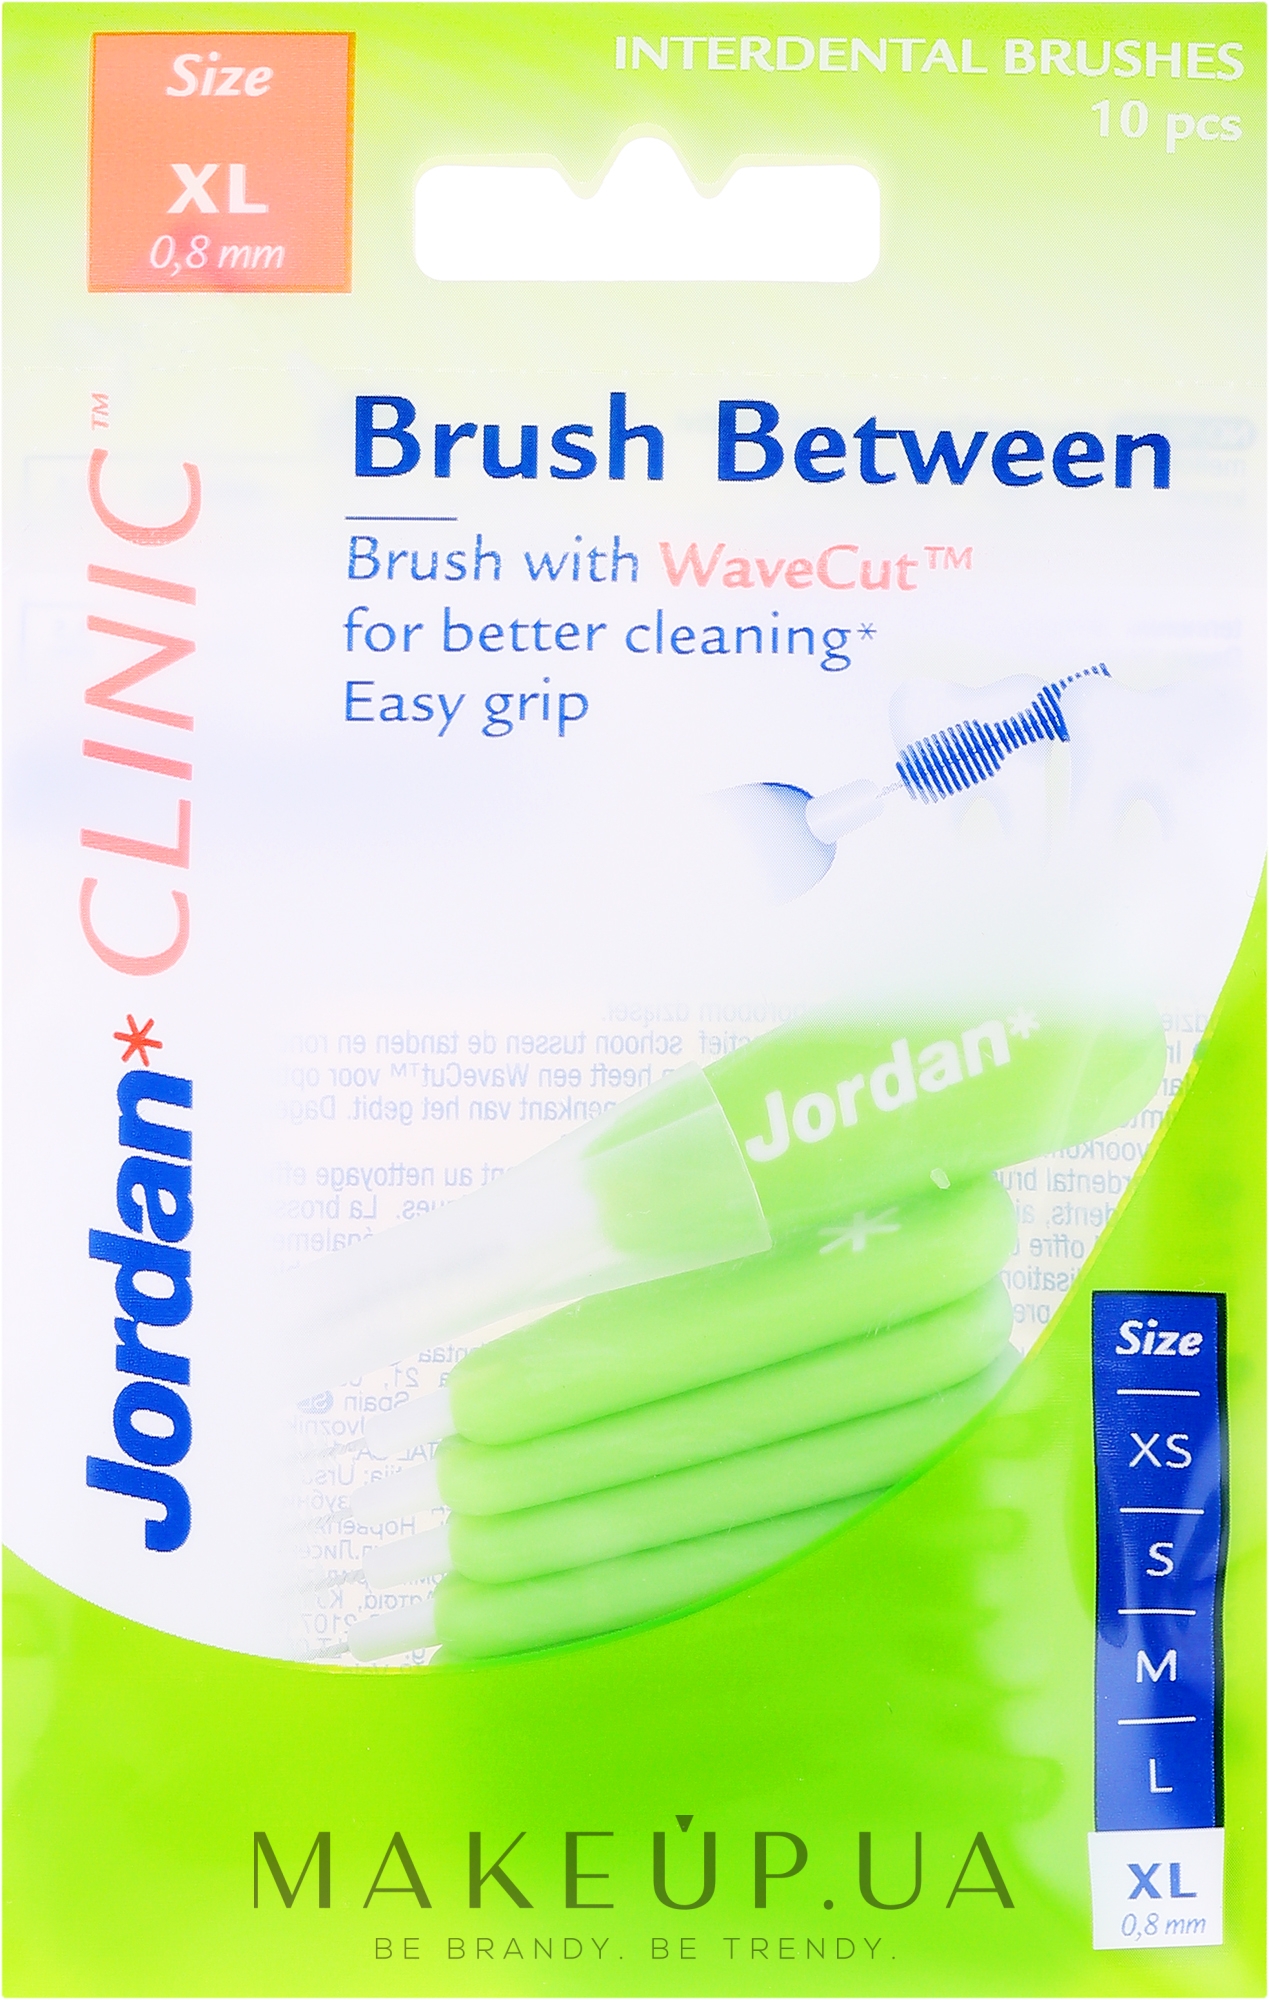 Межзубные ершики, 0.8мм, XL, 10шт - Jordan Interdental Brush Clinic Brush Between — фото 10шт